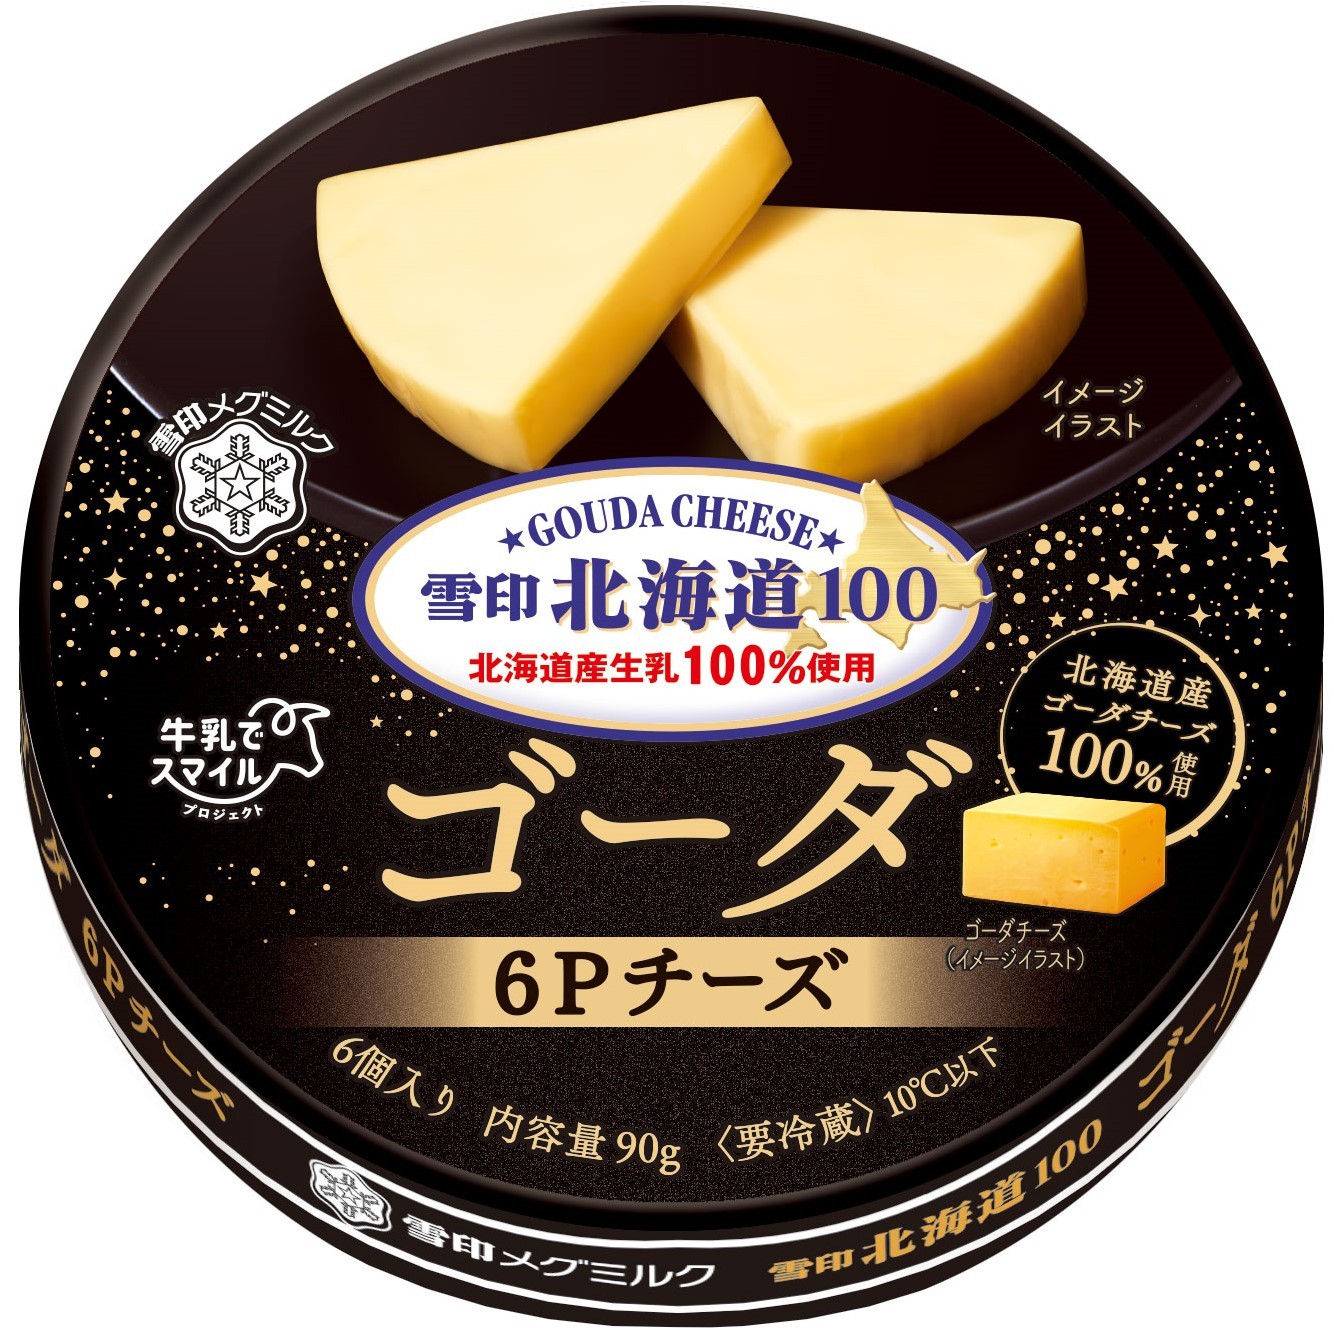 北海道産ゴーダチーズ100%使用！今だけの「雪印北海道100」
『雪印北海道100 ゴーダ ６Ｐチーズ』90g
 『雪印北海道100 ゴーダ クラッシュ』150g